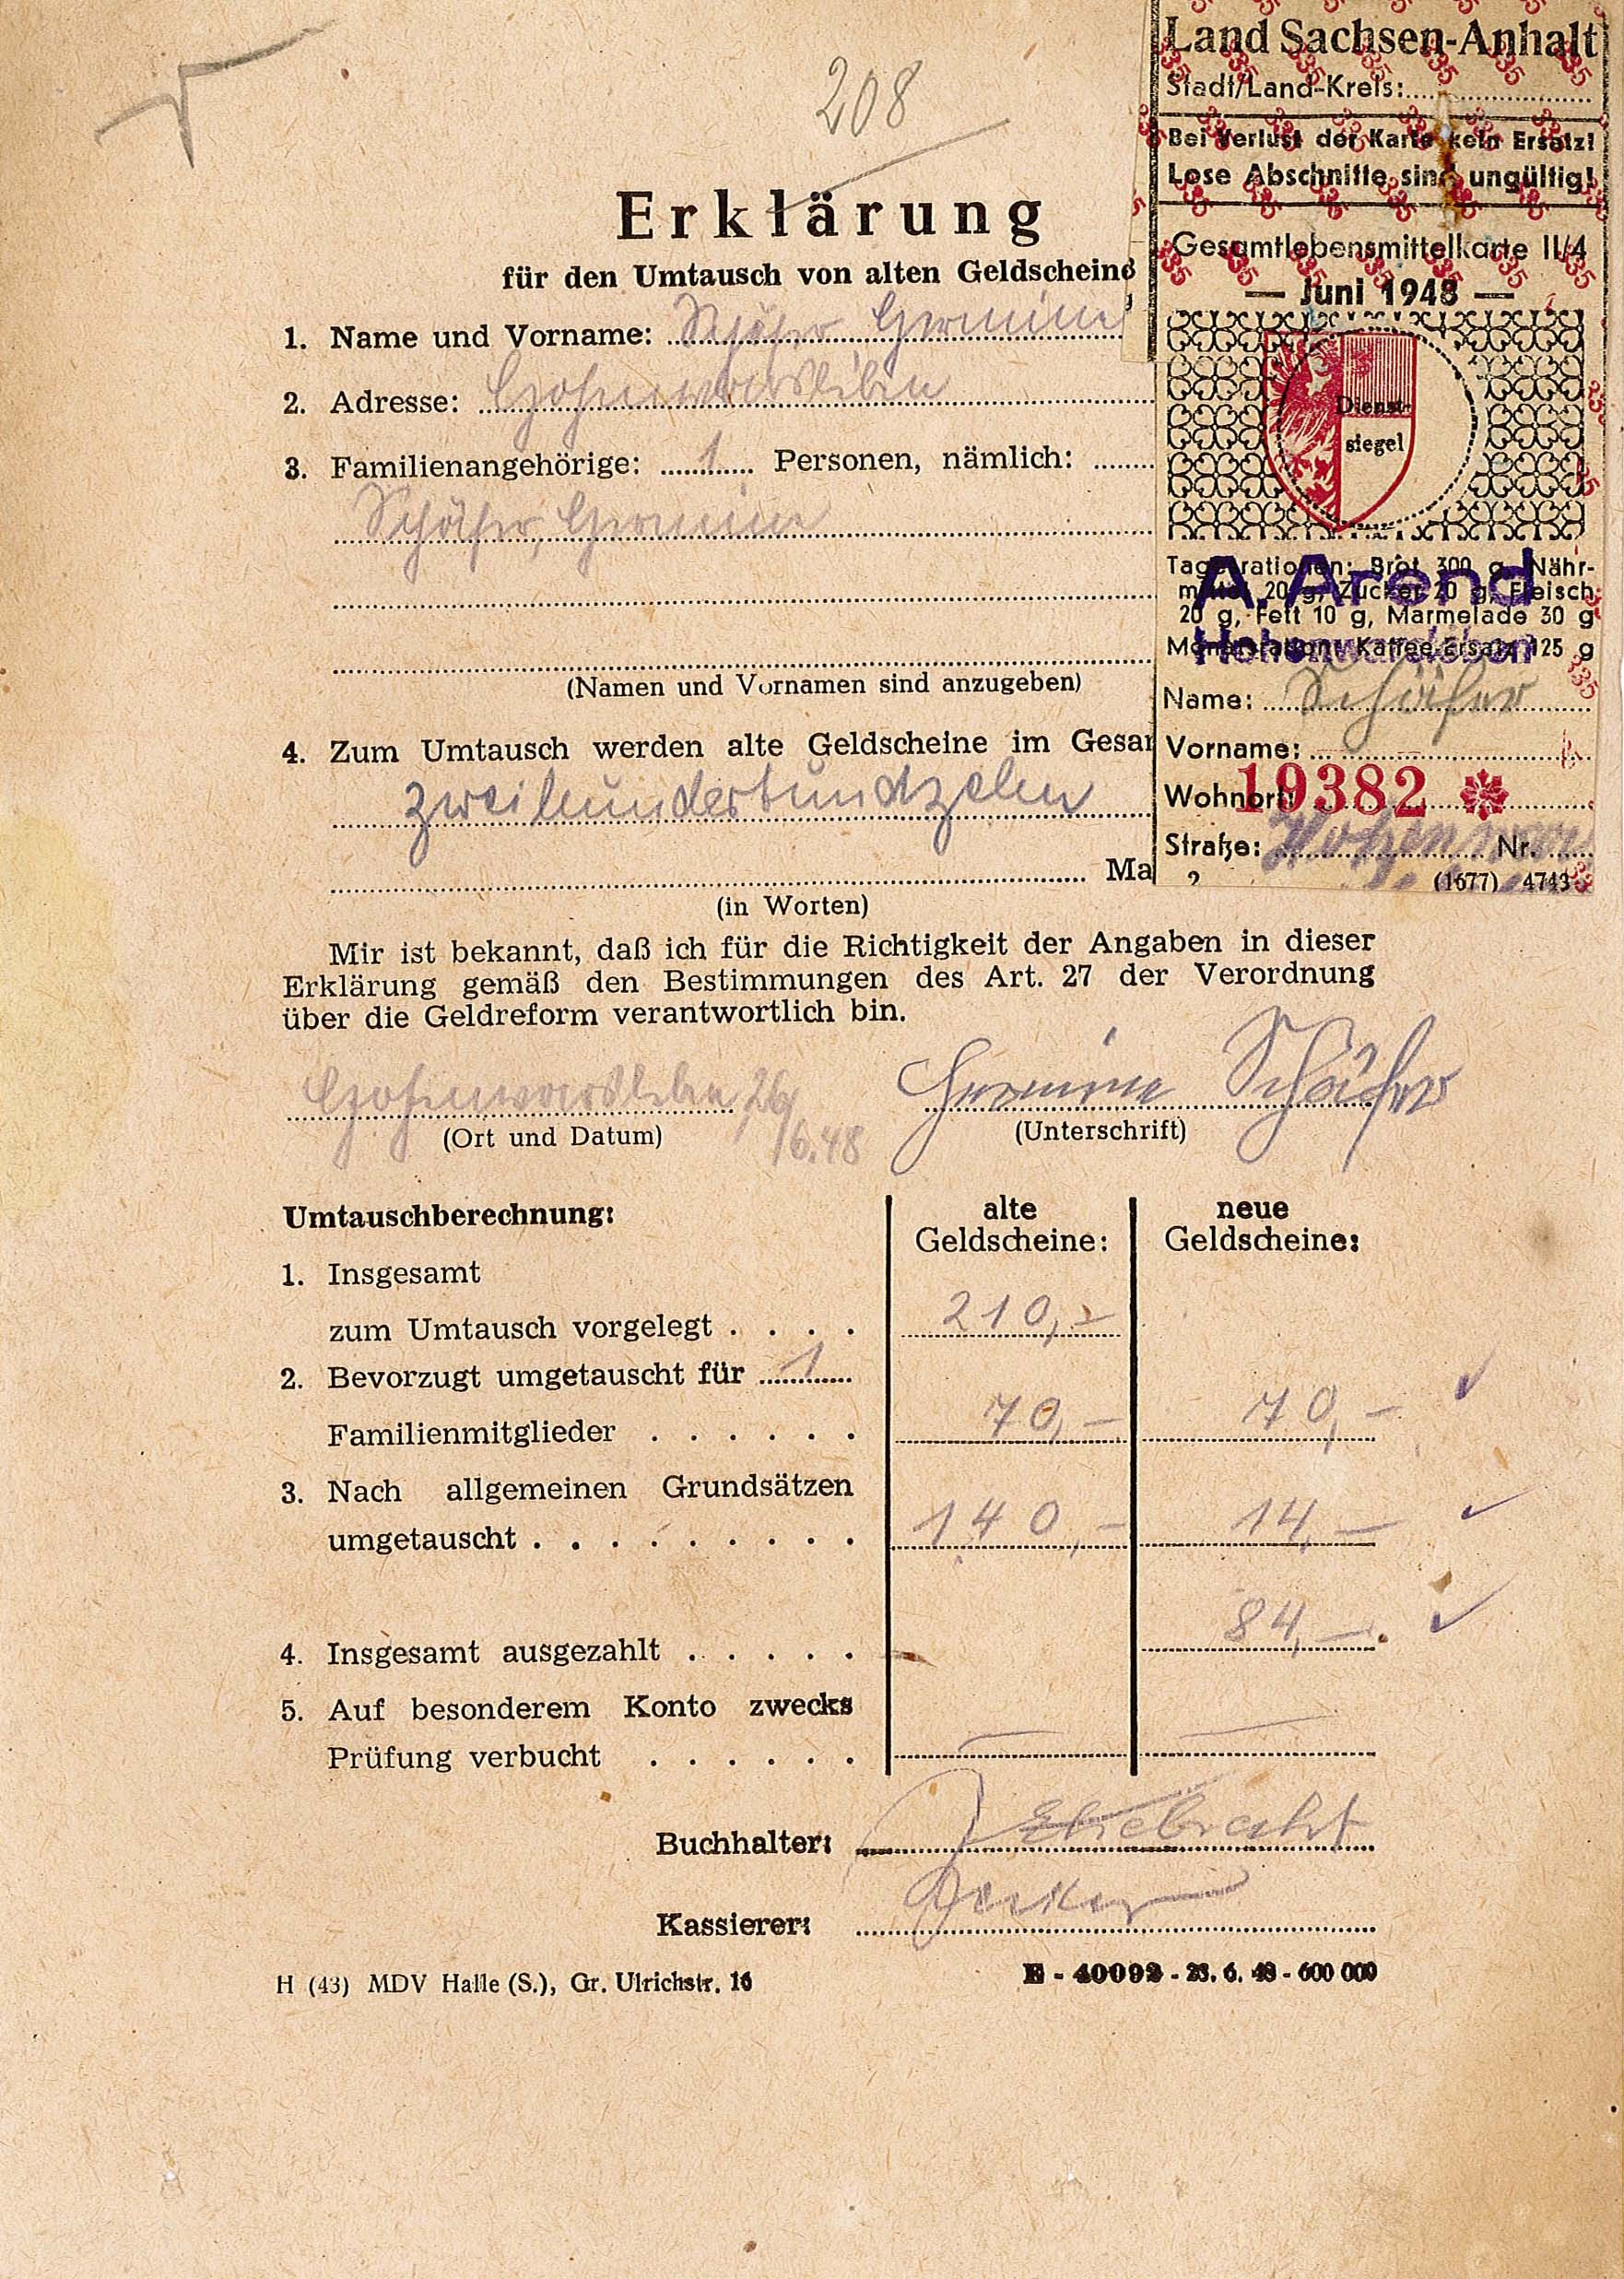 Erklärung für den Umtausch von Altgeld von Hermine Schäfer, 26. Juni 1948 - mit Lebensmittelmarken (Museum Wolmirstedt RR-F)